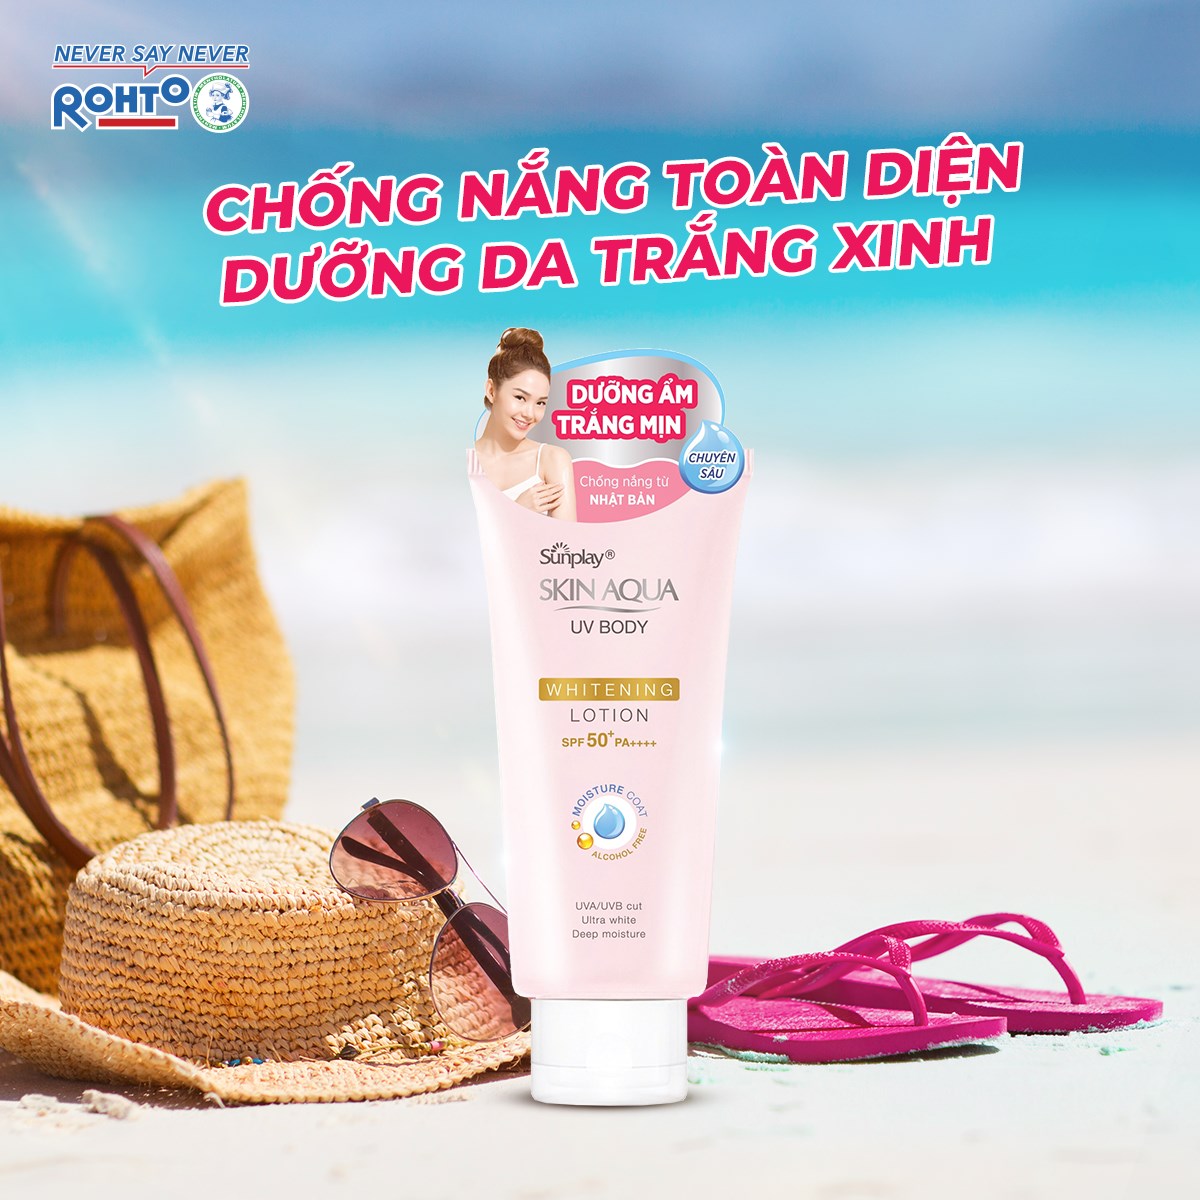 Chống Nắng Sunplay Skin Aqua UV Body Whitening Body Lotion Dưỡng Ẩm Trắng Mịn SPF50+ PA++++ 150g